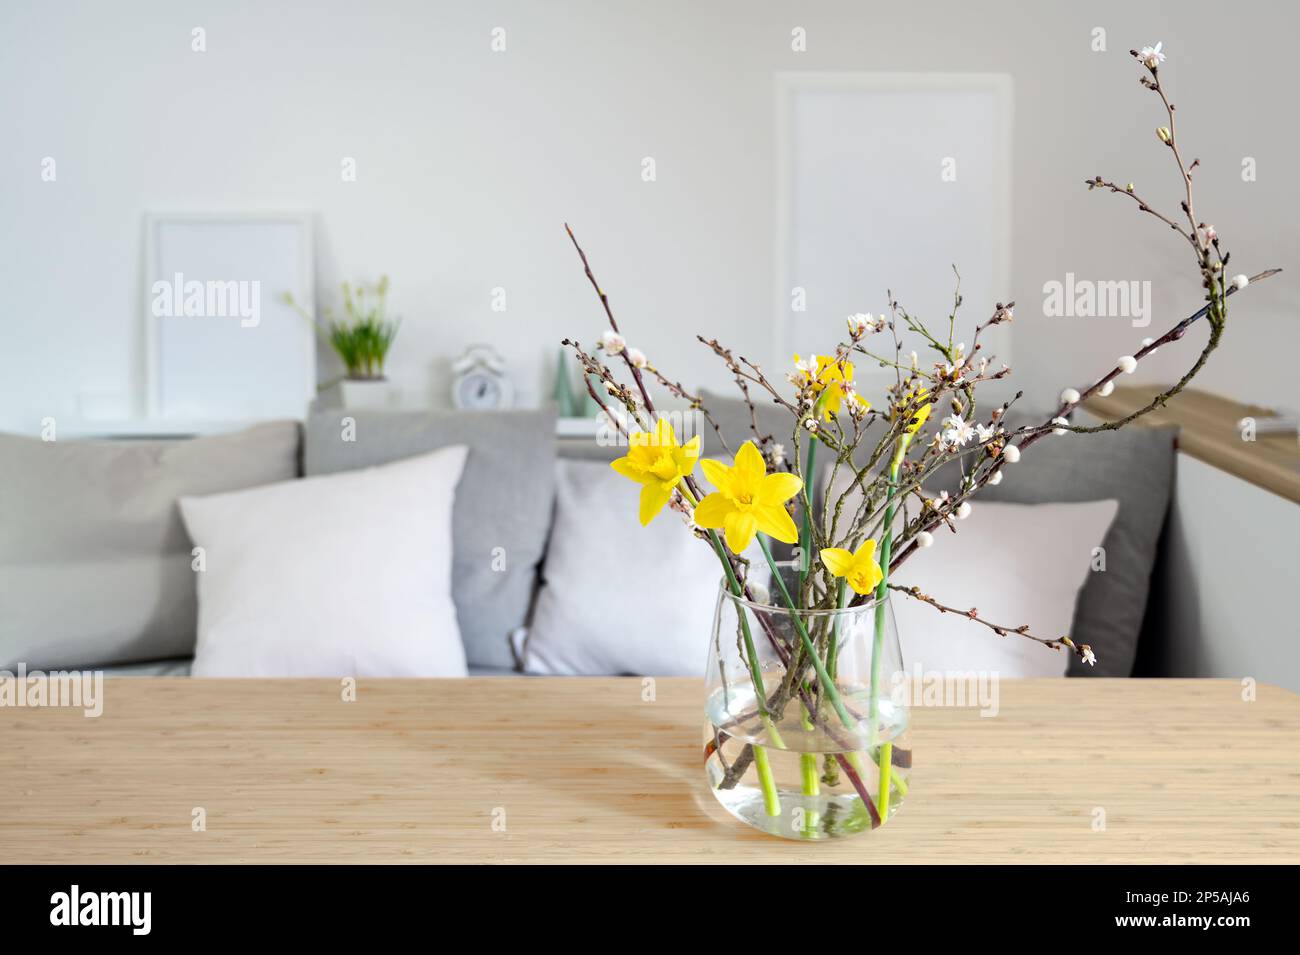 Bouquet primaverile con daffodils e rami fioriti in vaso di vetro su un tavolo di fronte a una panca divano, arredamento stagionale, spazio copia, selezionato fo Foto Stock